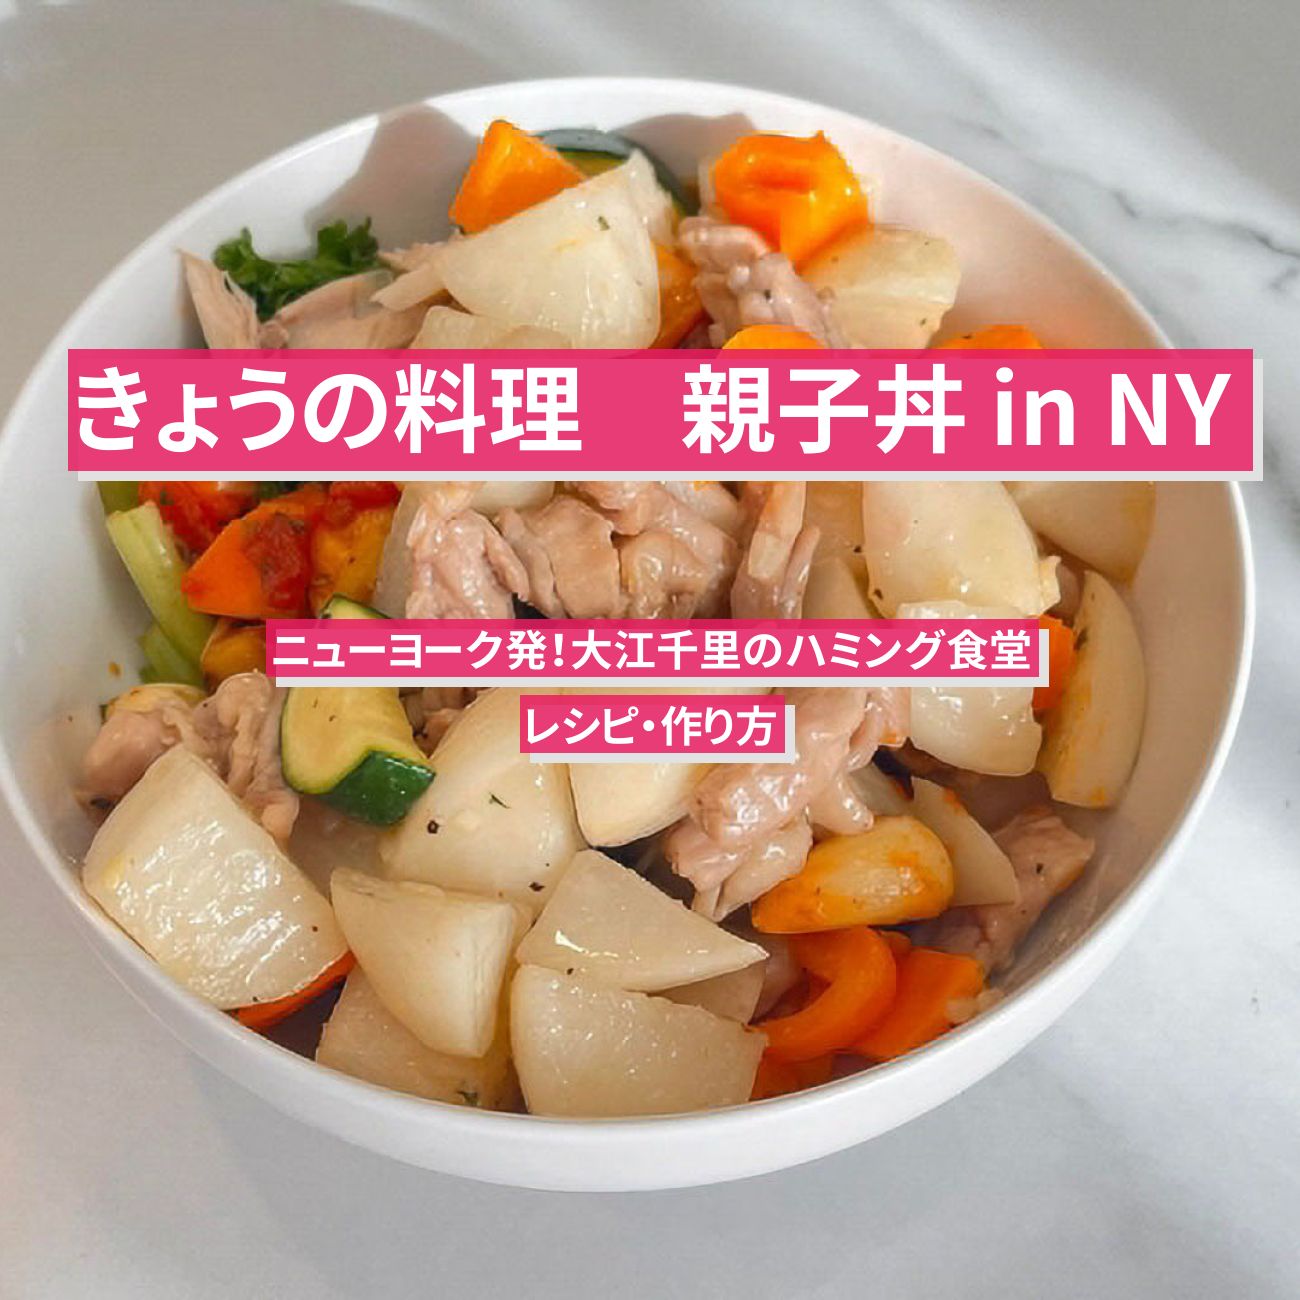 【きょうの料理】『親子丼 in NY』大江千里さんのレシピ・作り方